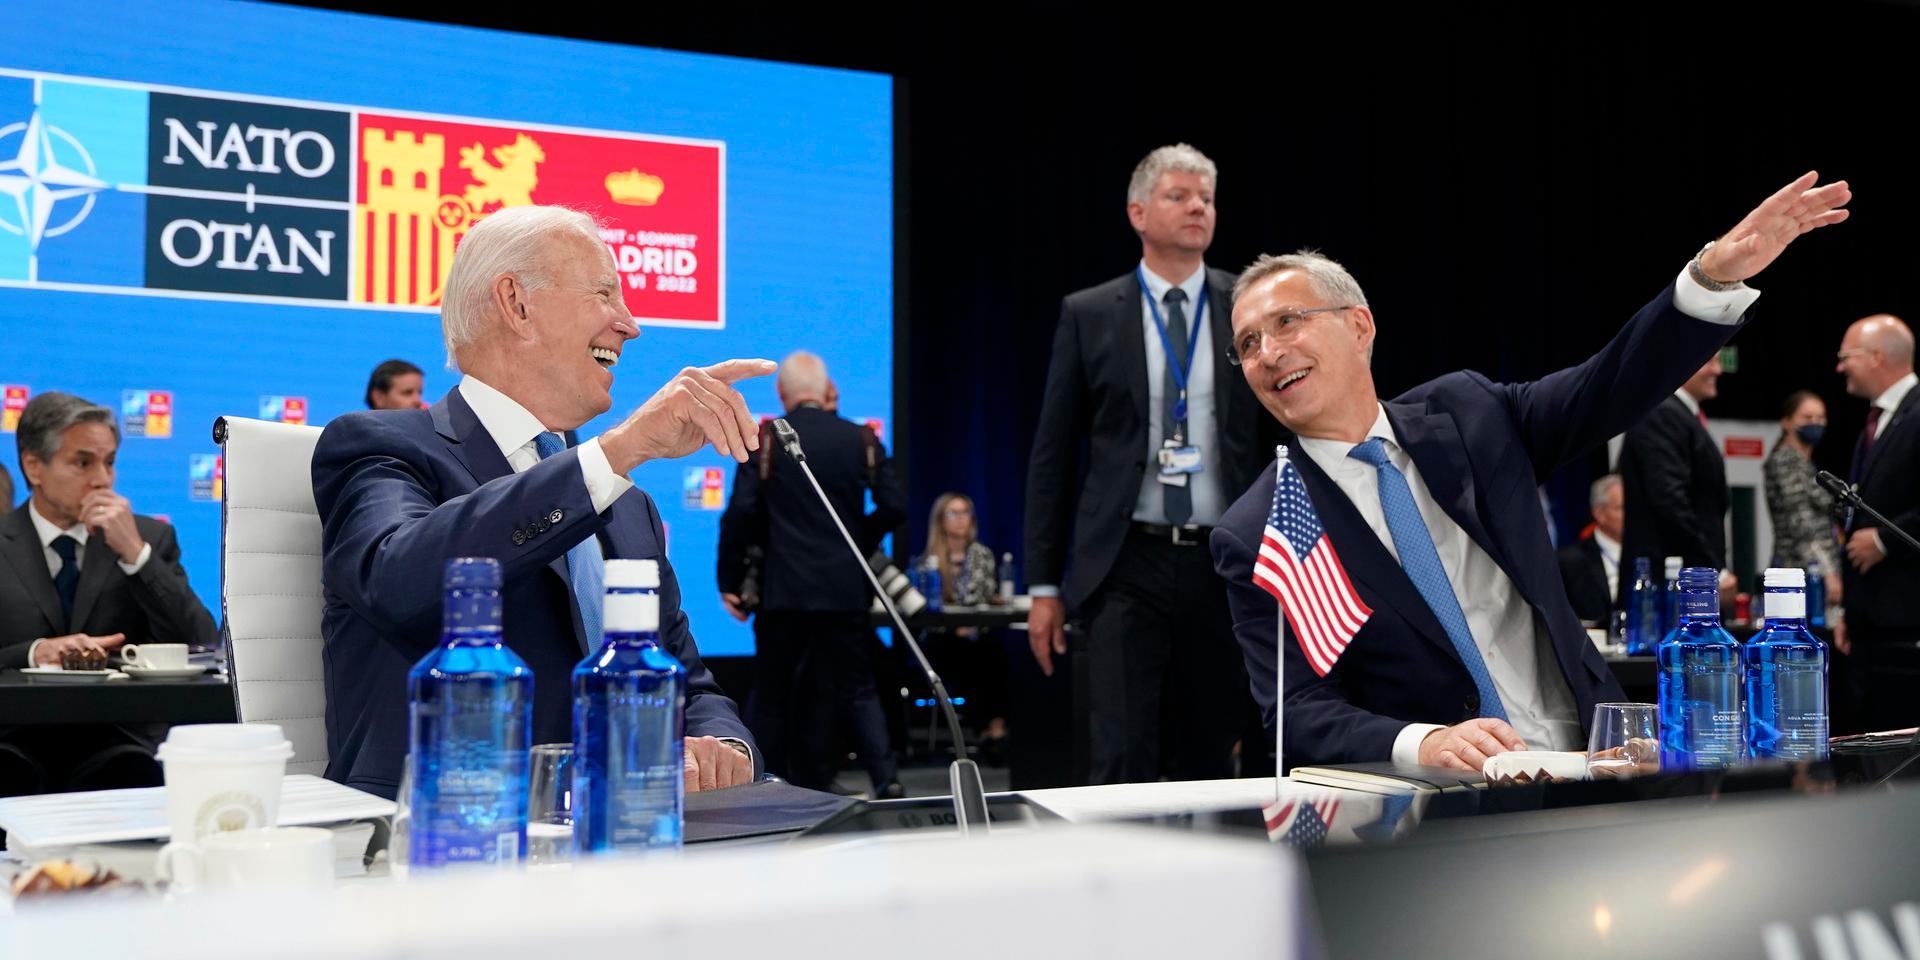 USA:s president Joe Biden och Natos generalsekreterare Jens Stoltenberg vid Natotoppmötet i Madrid.